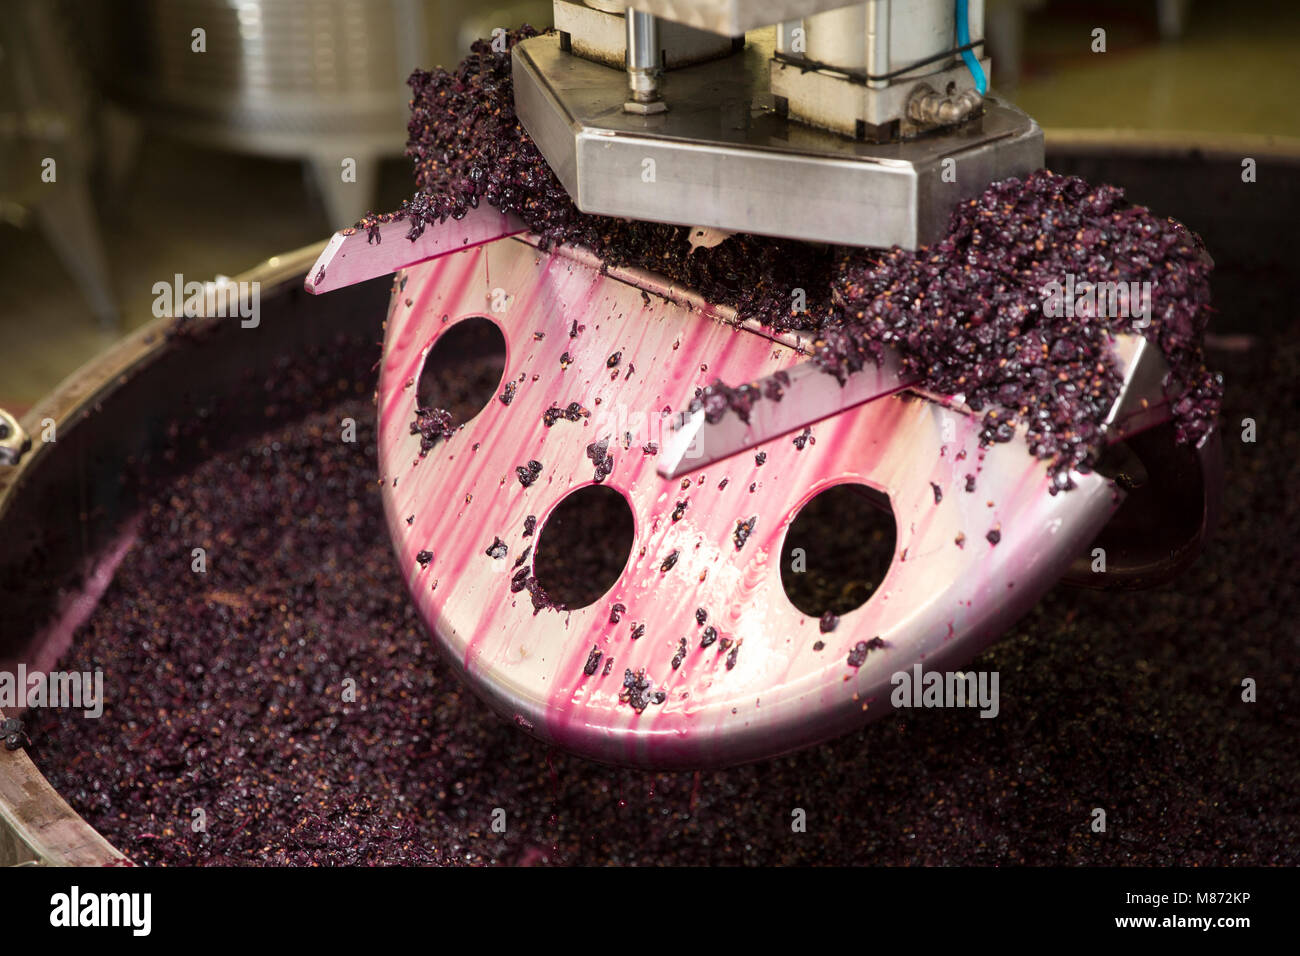 La frantumazione di uve rosse per il vino, Toscana, Italia Foto Stock